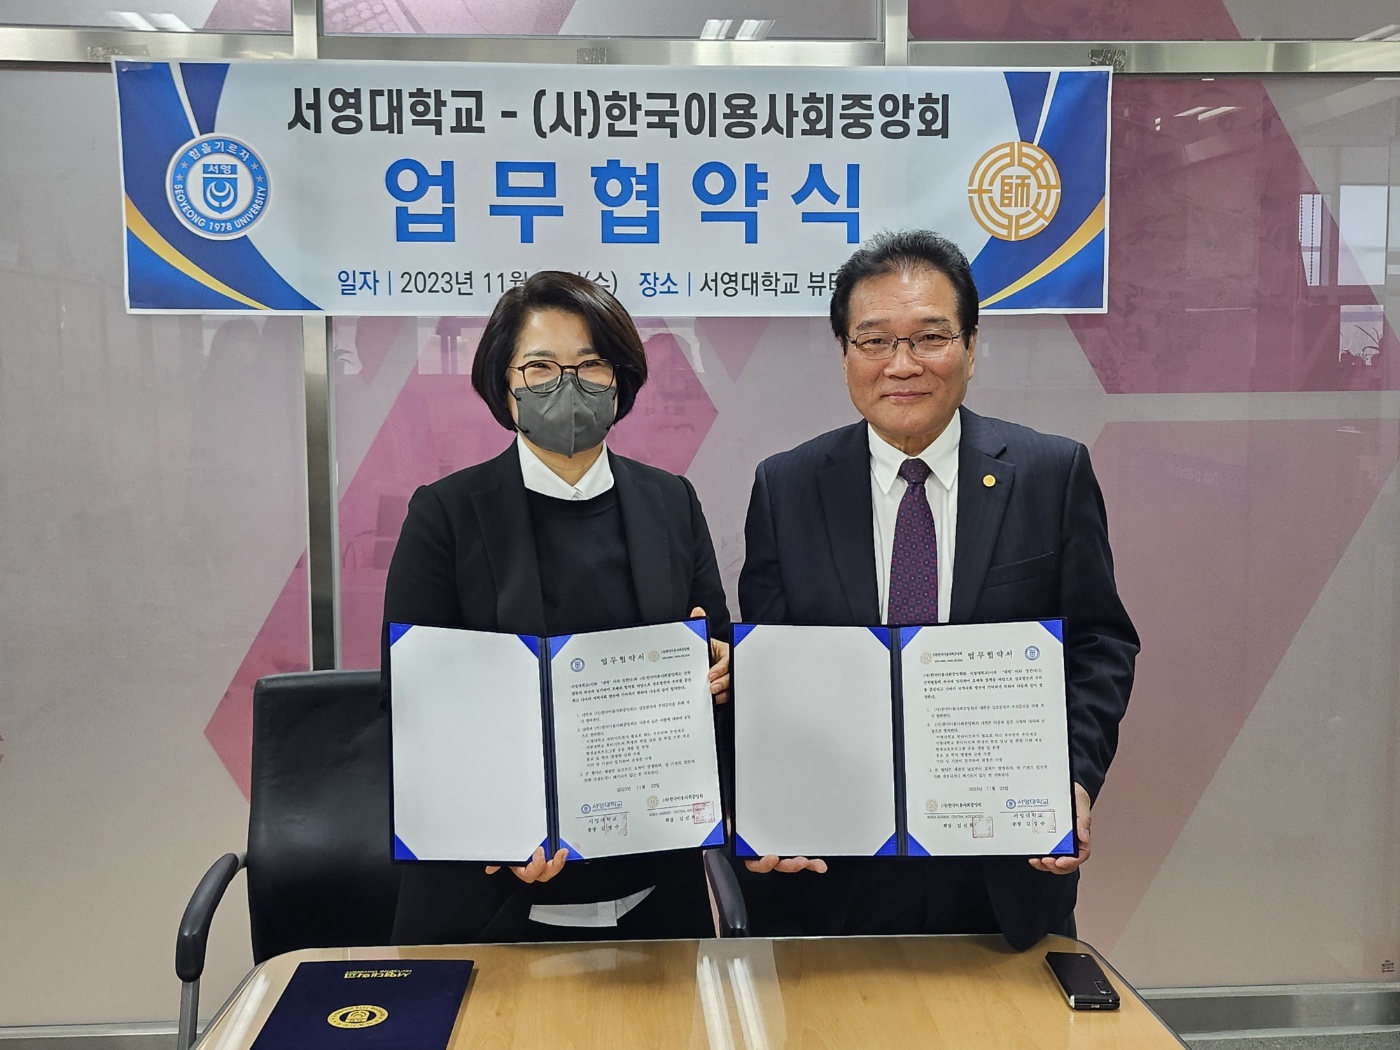   서영대학교 뷰티아트과와 (사)한국이용사중앙회 업무협약체결